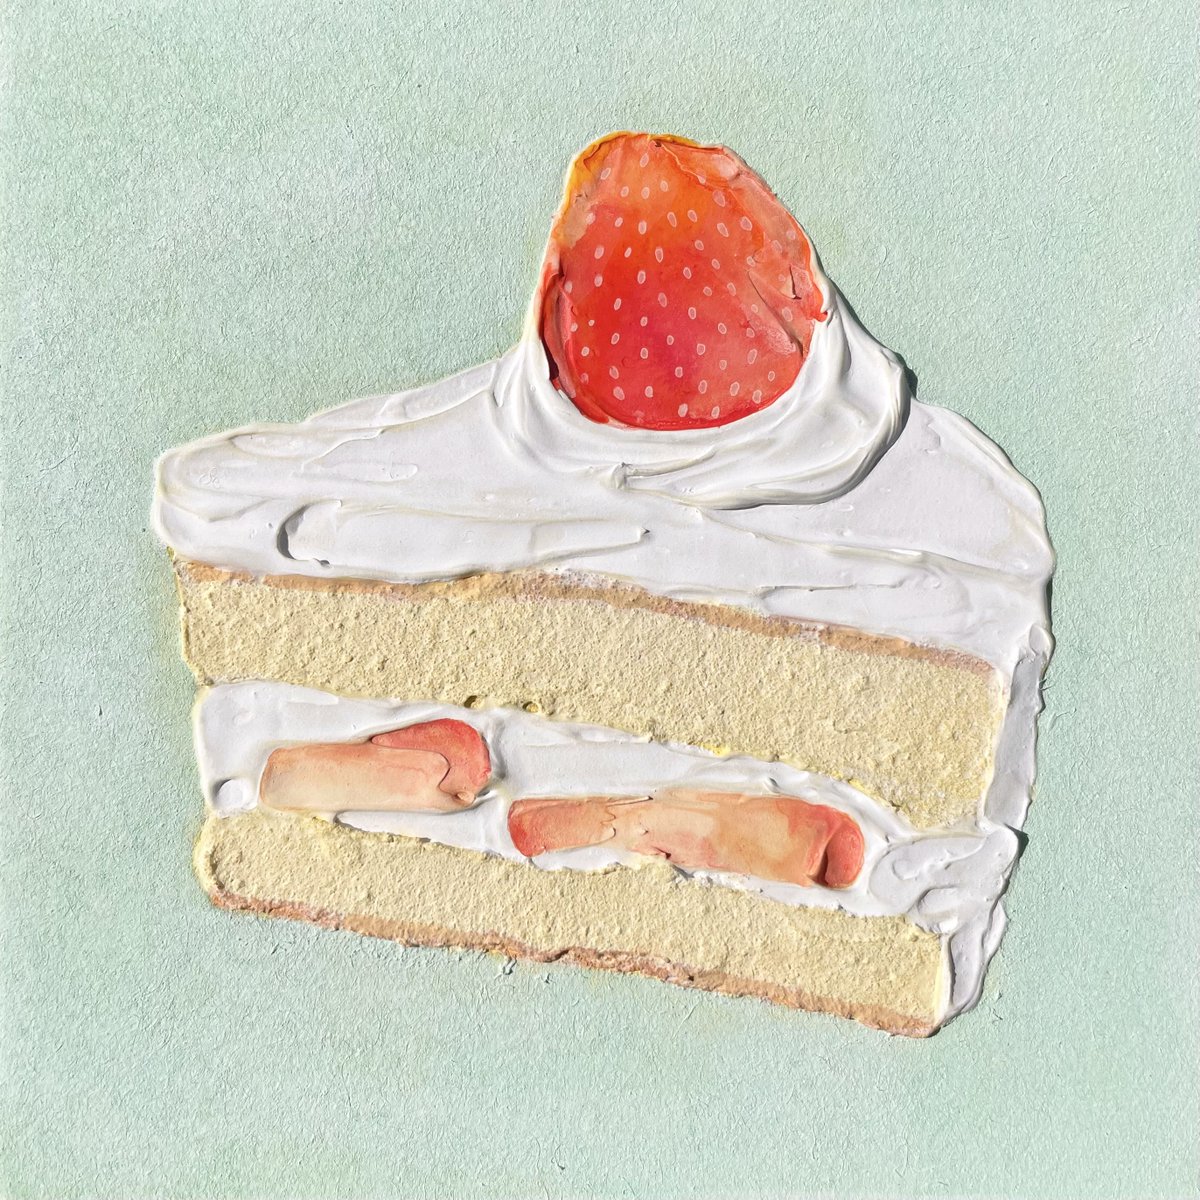 「ショートケーキと絵肌が好きです!:)#この際だからフォローしてみませんか 」|𝓝𝓪𝓽𝓼𝓾𝓶𝓲🍓Natsumi Takahashiのイラスト